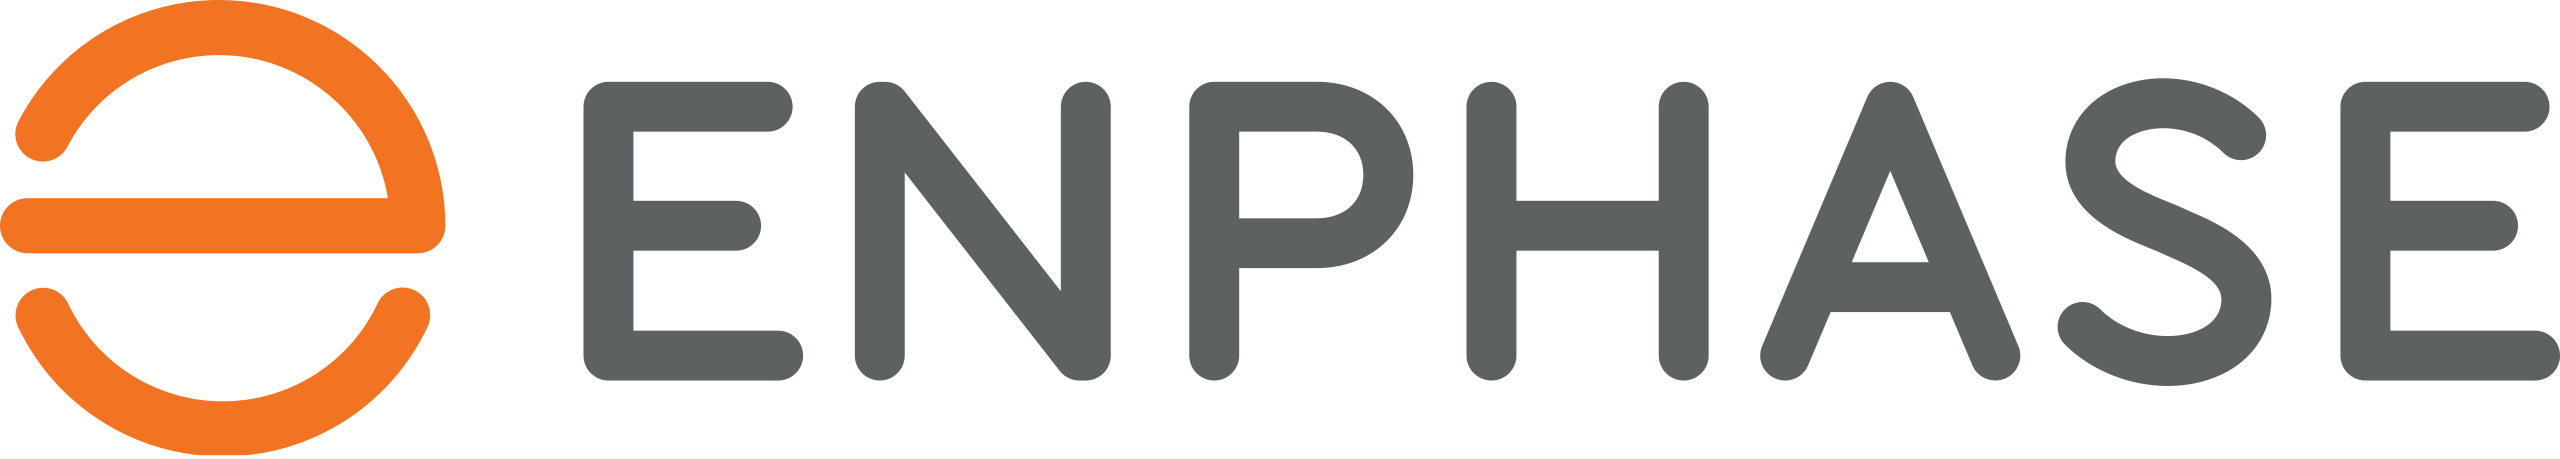 Enphase-Logo